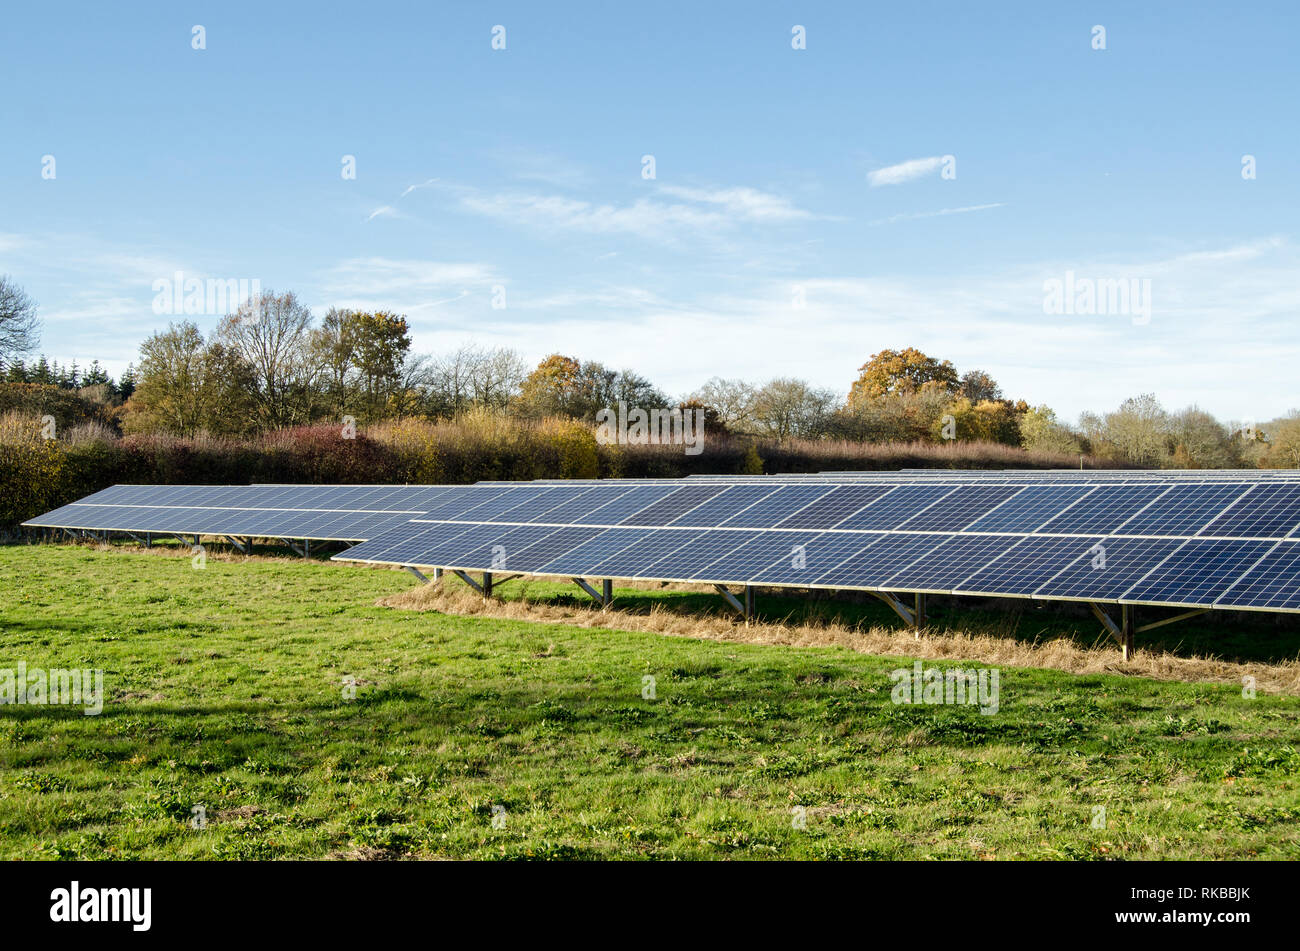 Un campo lleno de paneles fotovoltaicos para generar energía solar en Hampshire, Inglaterra. Visto desde una carretera pública en una soleada tarde de invierno. Foto de stock